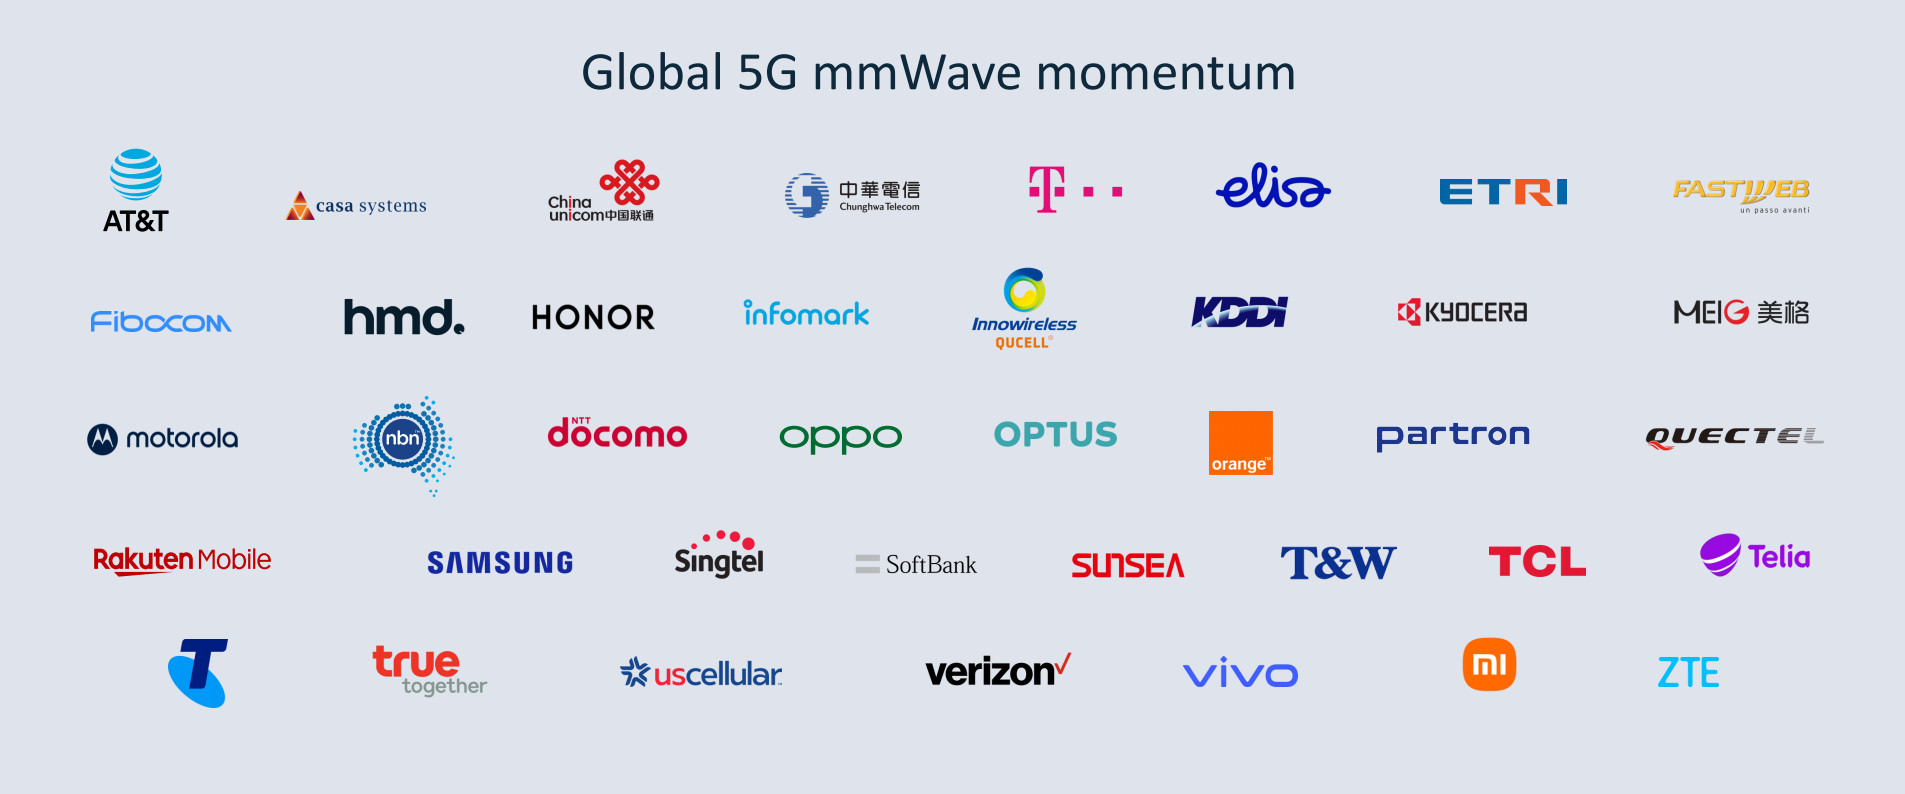 高通、AT&T、小米、三星等公司宣布合作推动5G毫米波技术推广